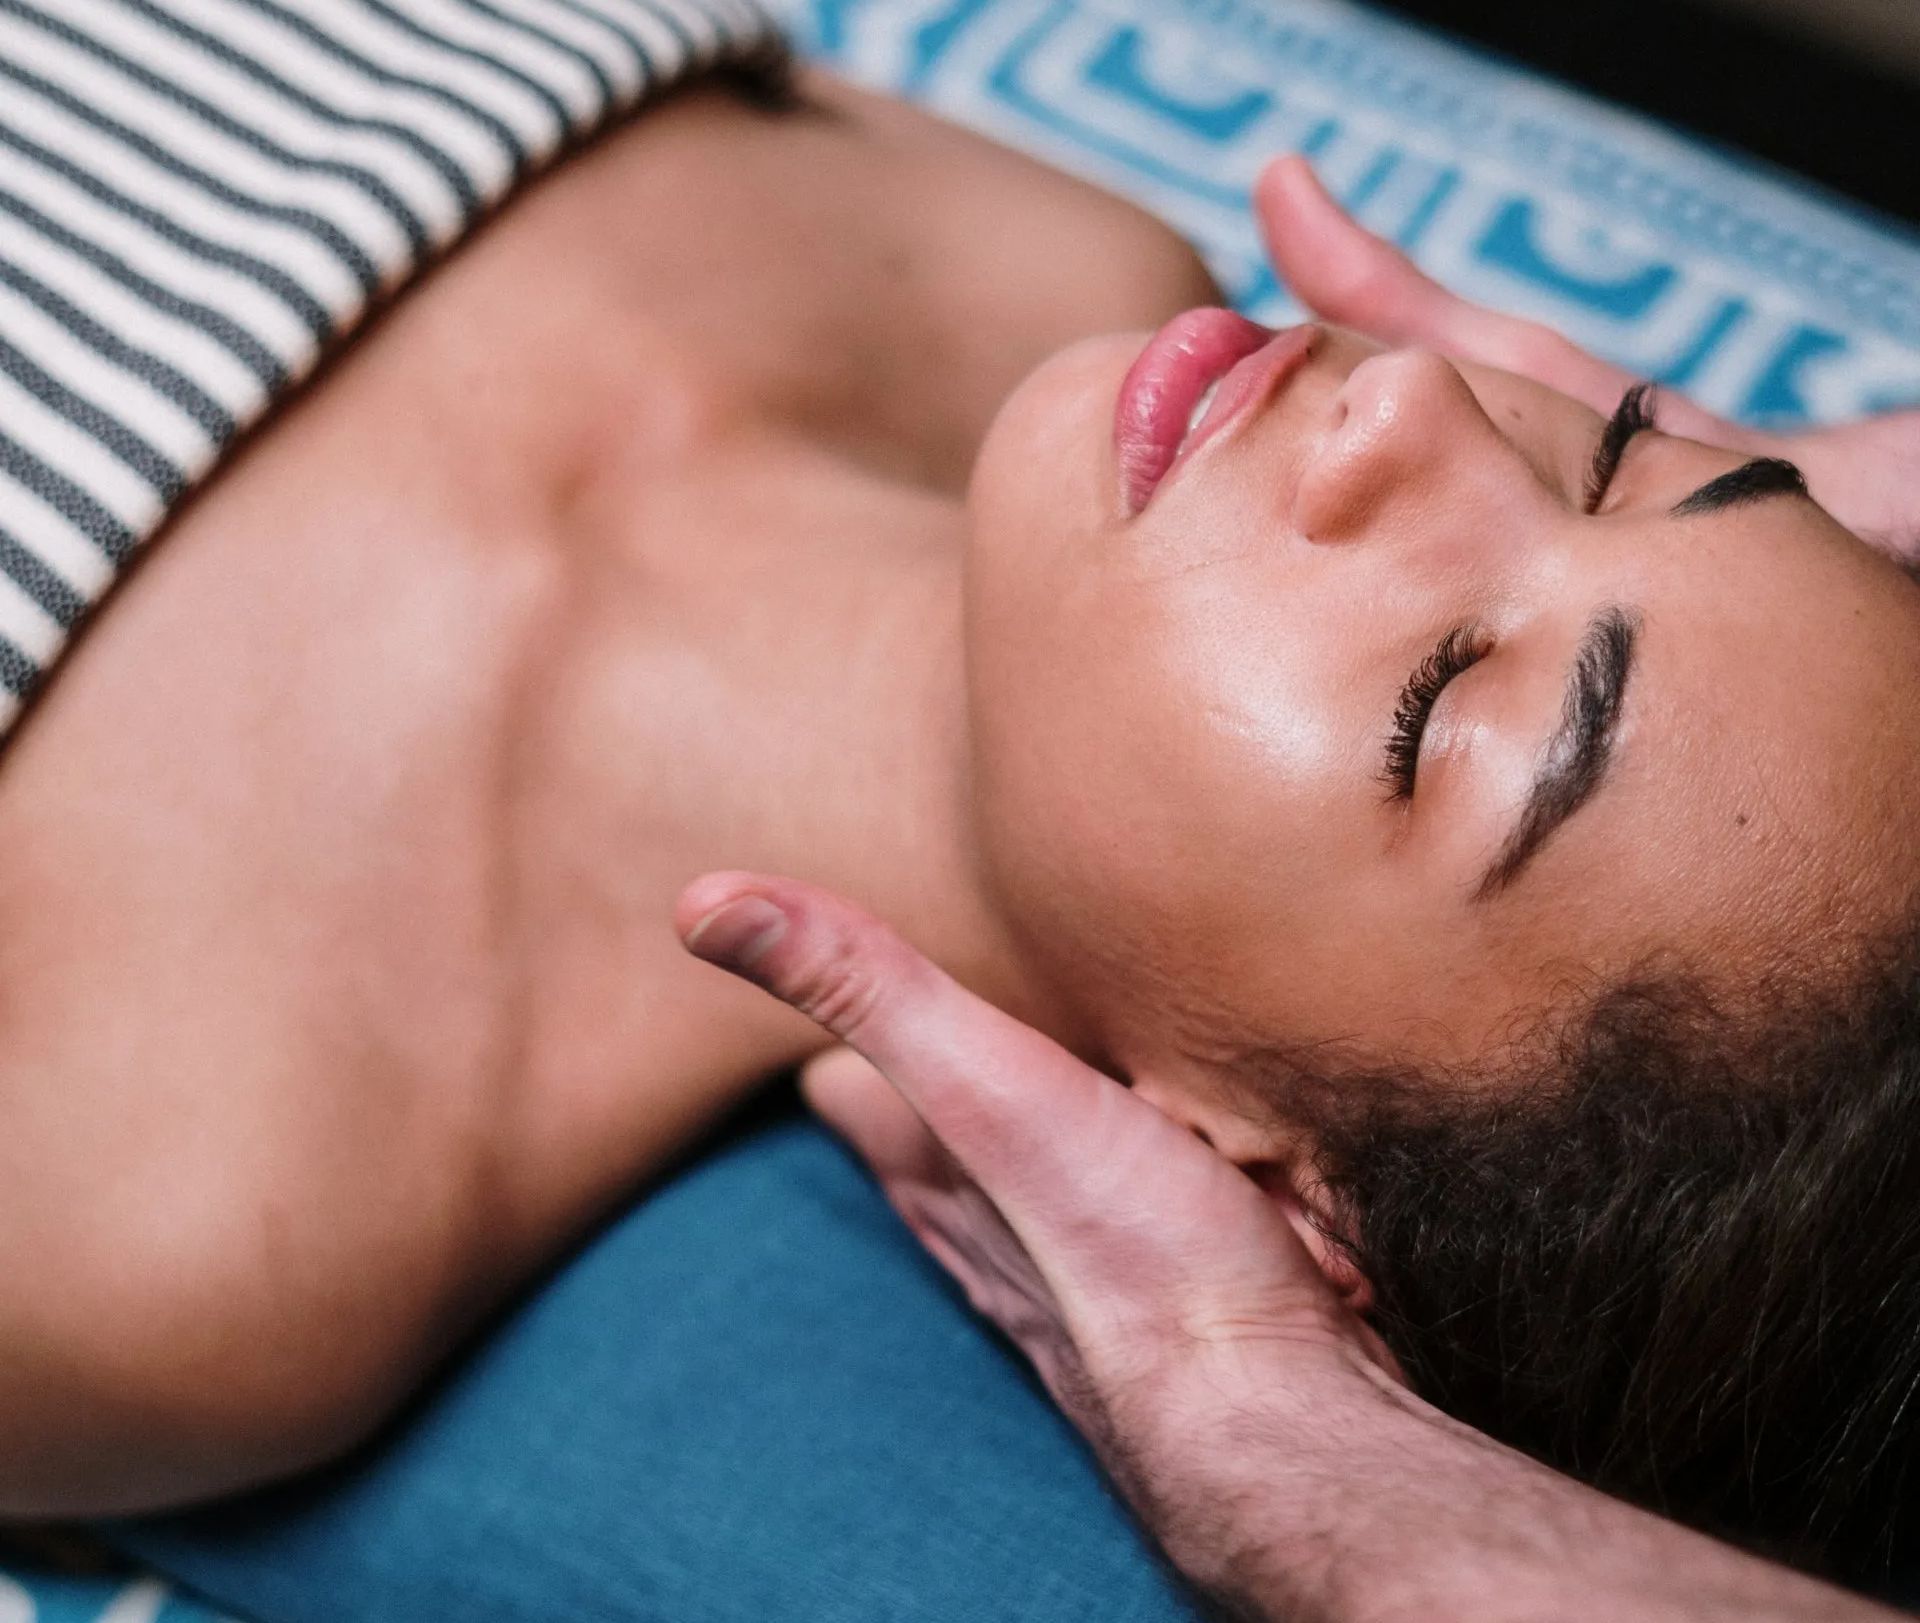 Uma mulher deitada na cama com os olhos fechados recebendo uma massagem